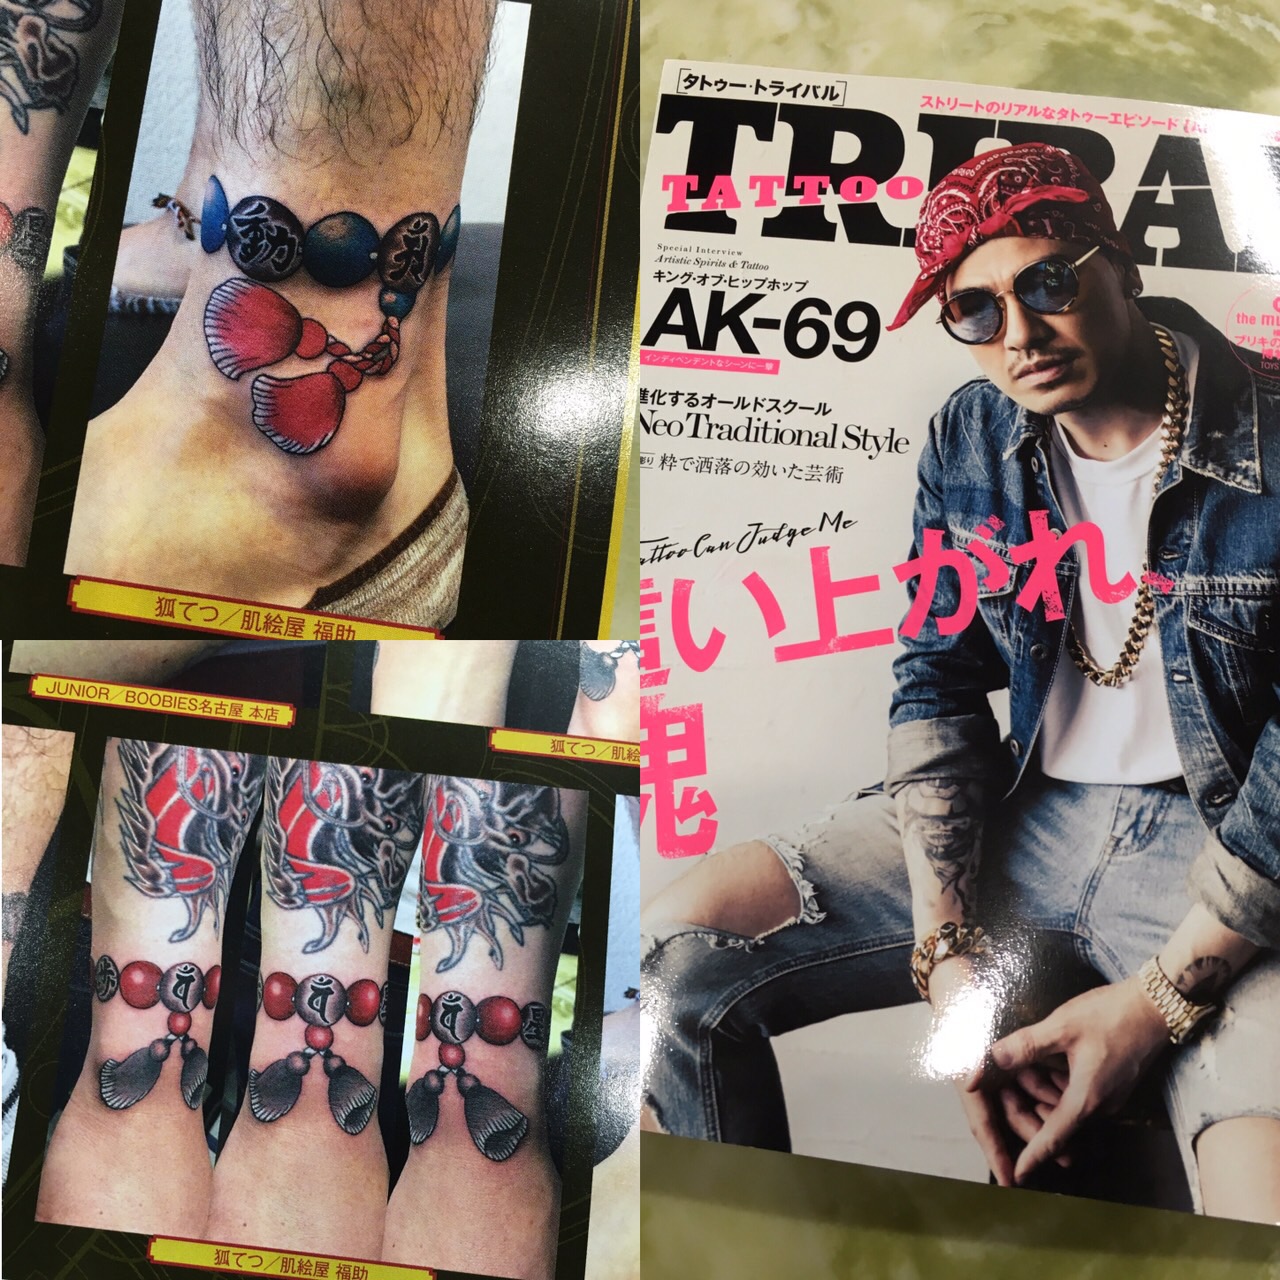 Tattoo Tribal Vol 67 兵庫県 神戸 明石 タトゥー 肌絵屋 福助